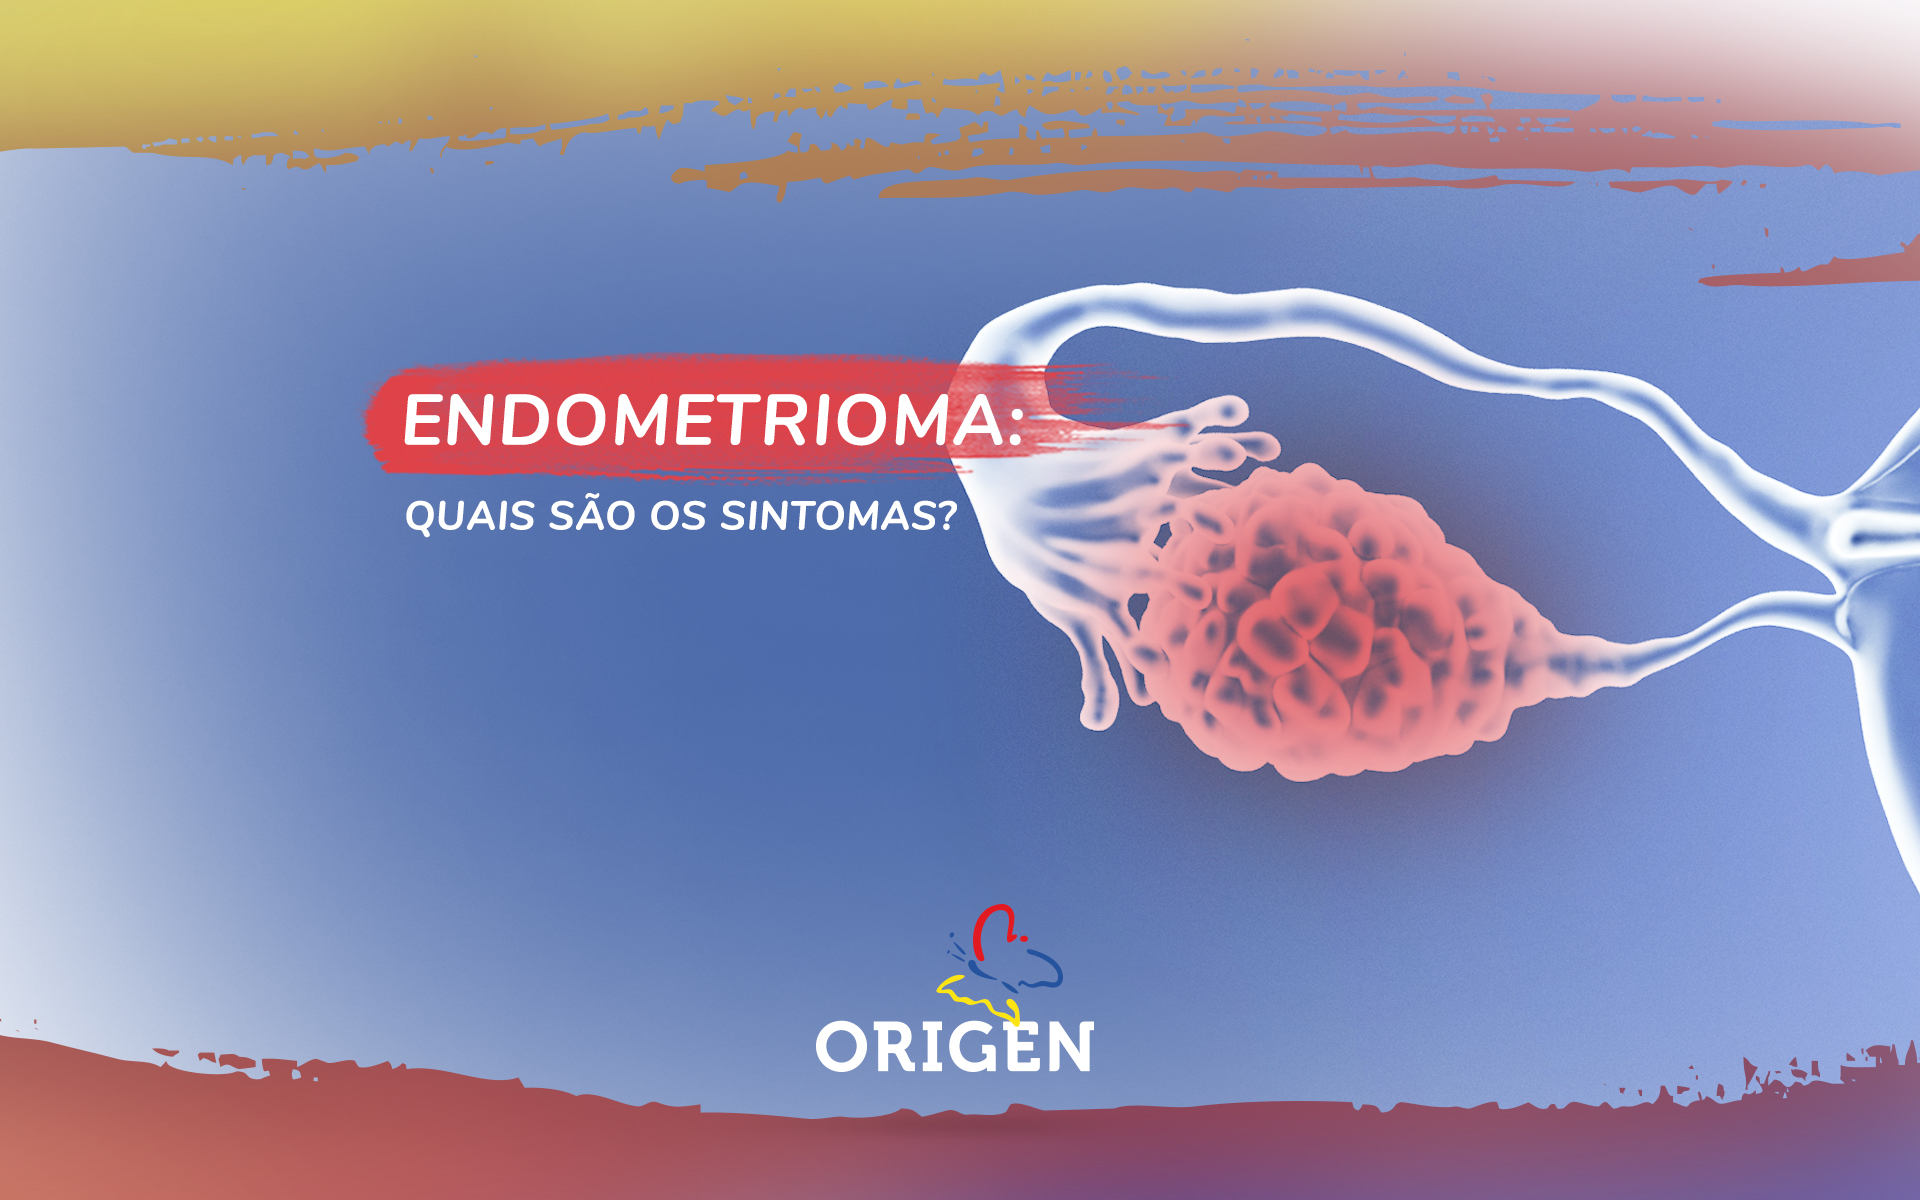 Endometrioma: quais são os sintomas?